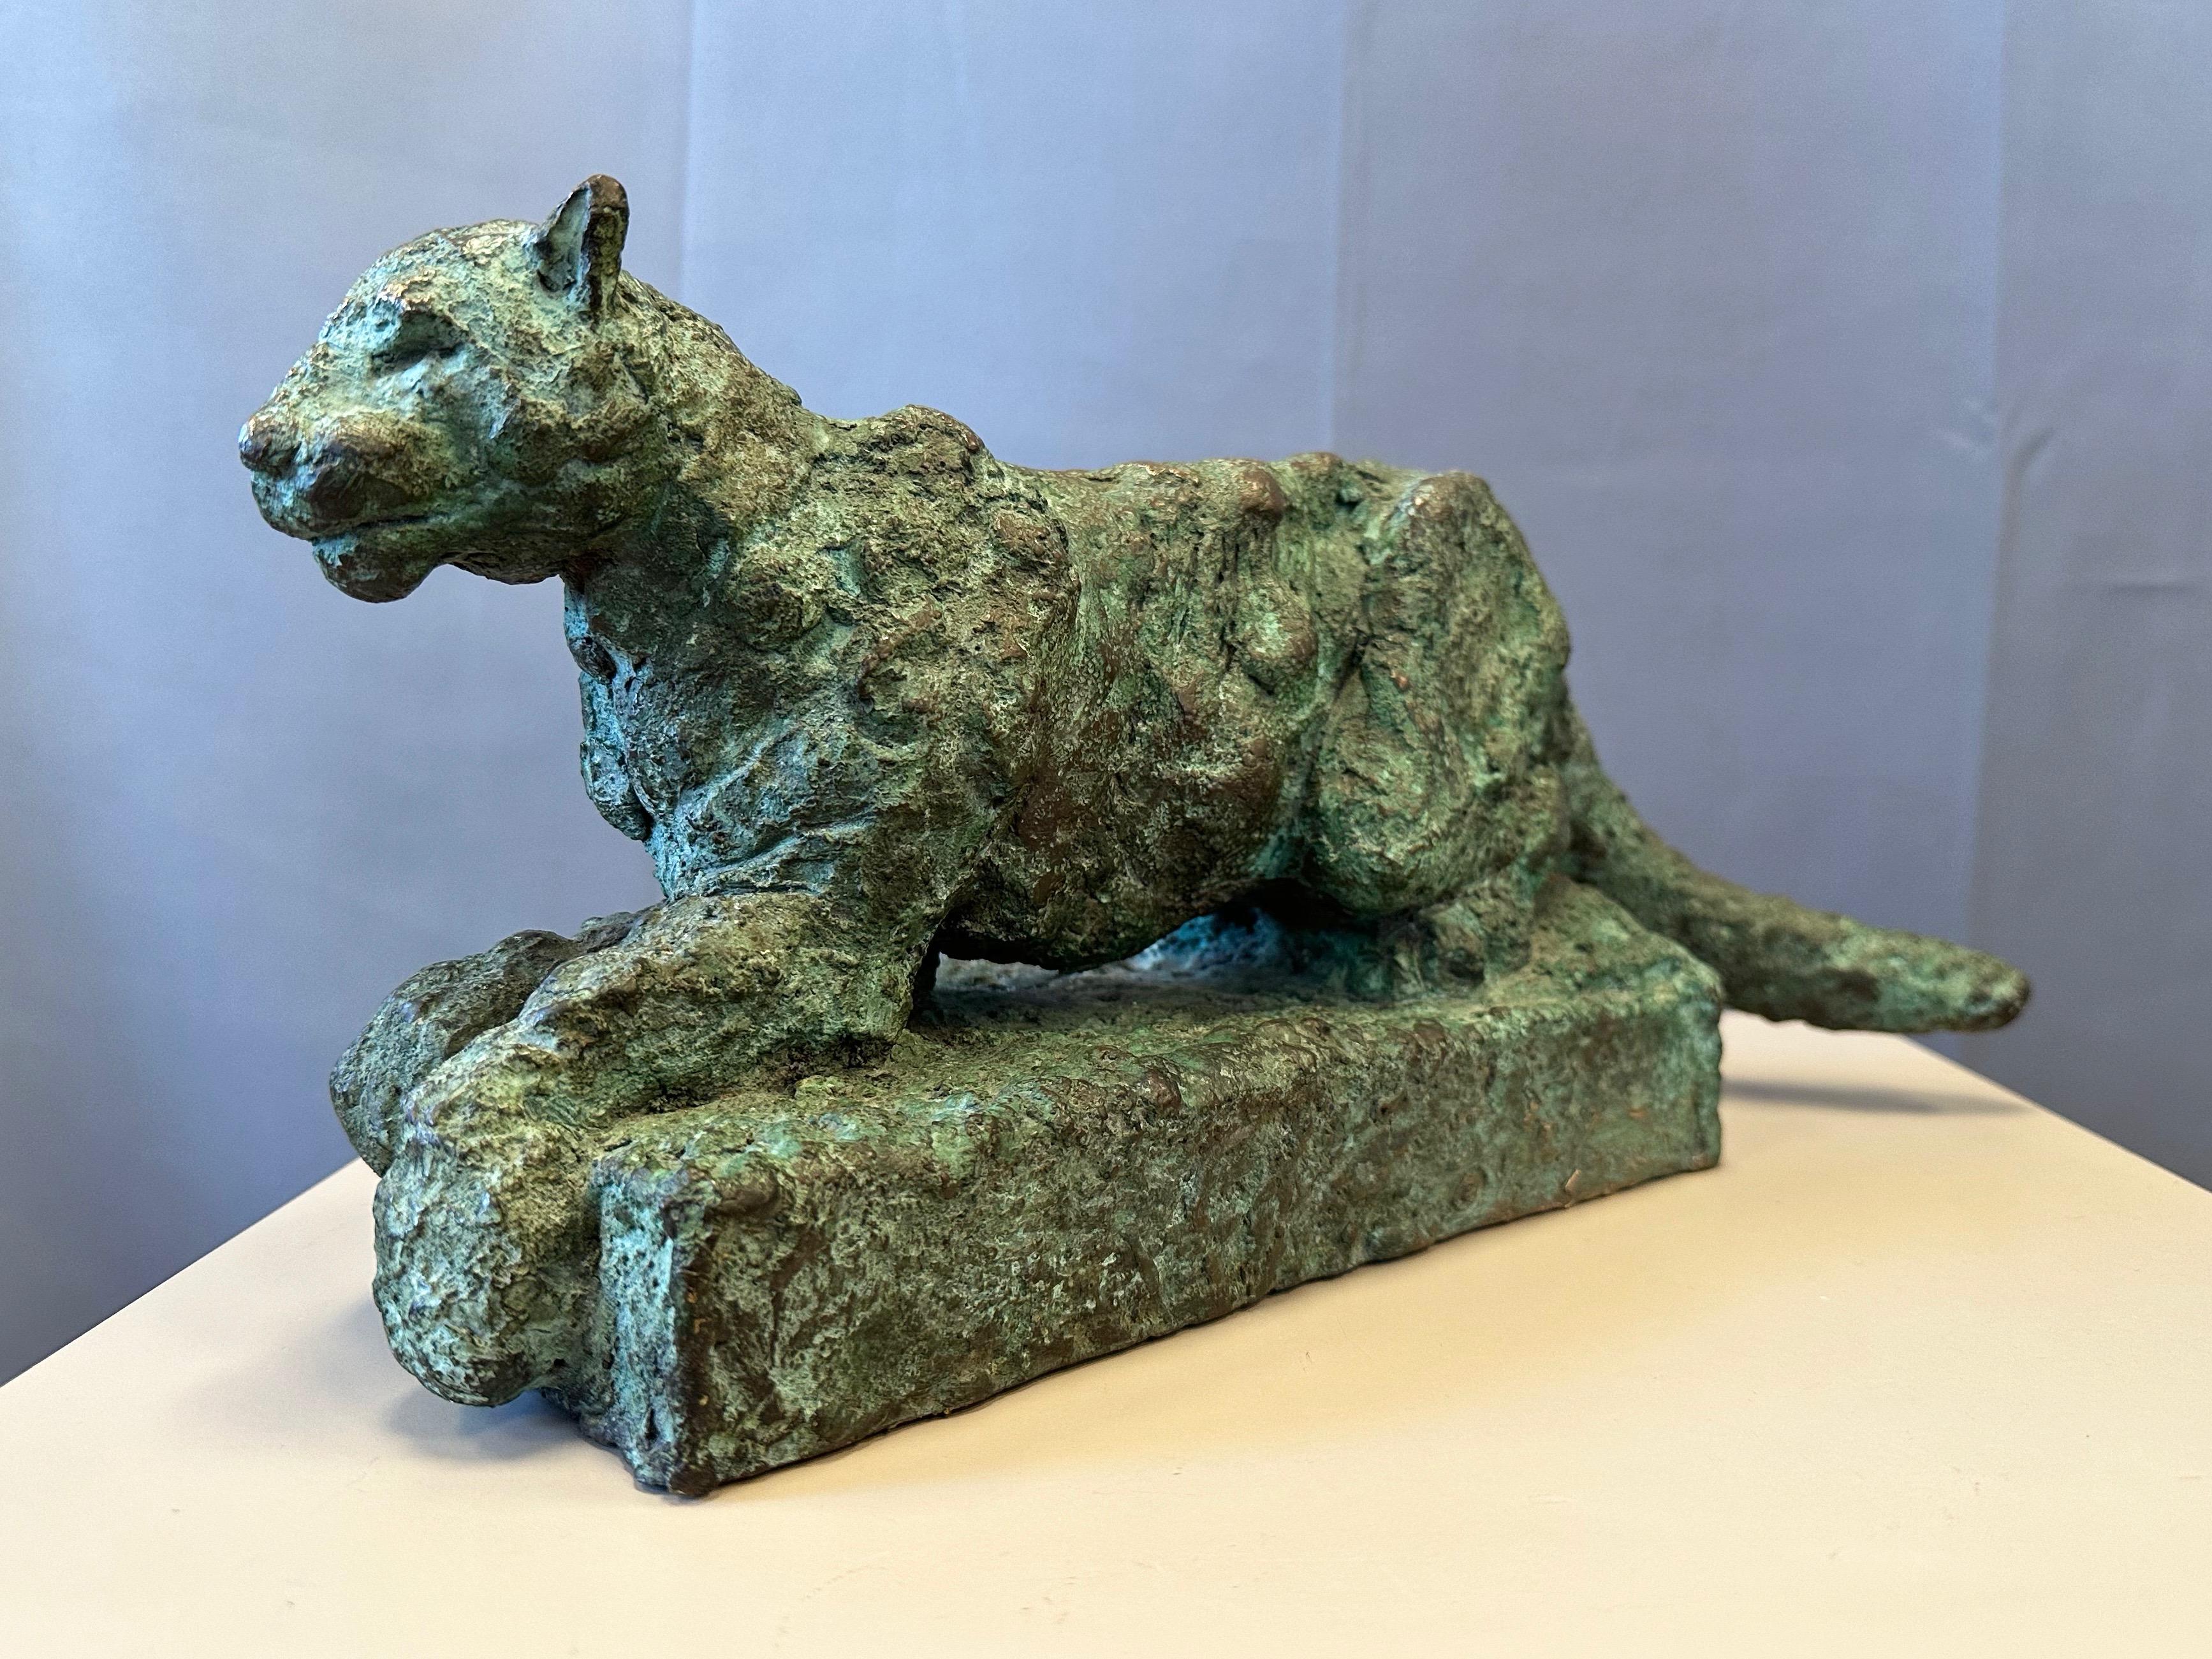 Eine sehr schöne und einnehmende circa frühen 2000er Jahren signiert und nummeriert Brutalist Bronze-Skulptur eines Pumas von weltbekannten San Francisco Bay Area Bildhauer und Maler Bruce Hasson (geb. 1954) gegossen.

Die Großkatze, die aufgrund